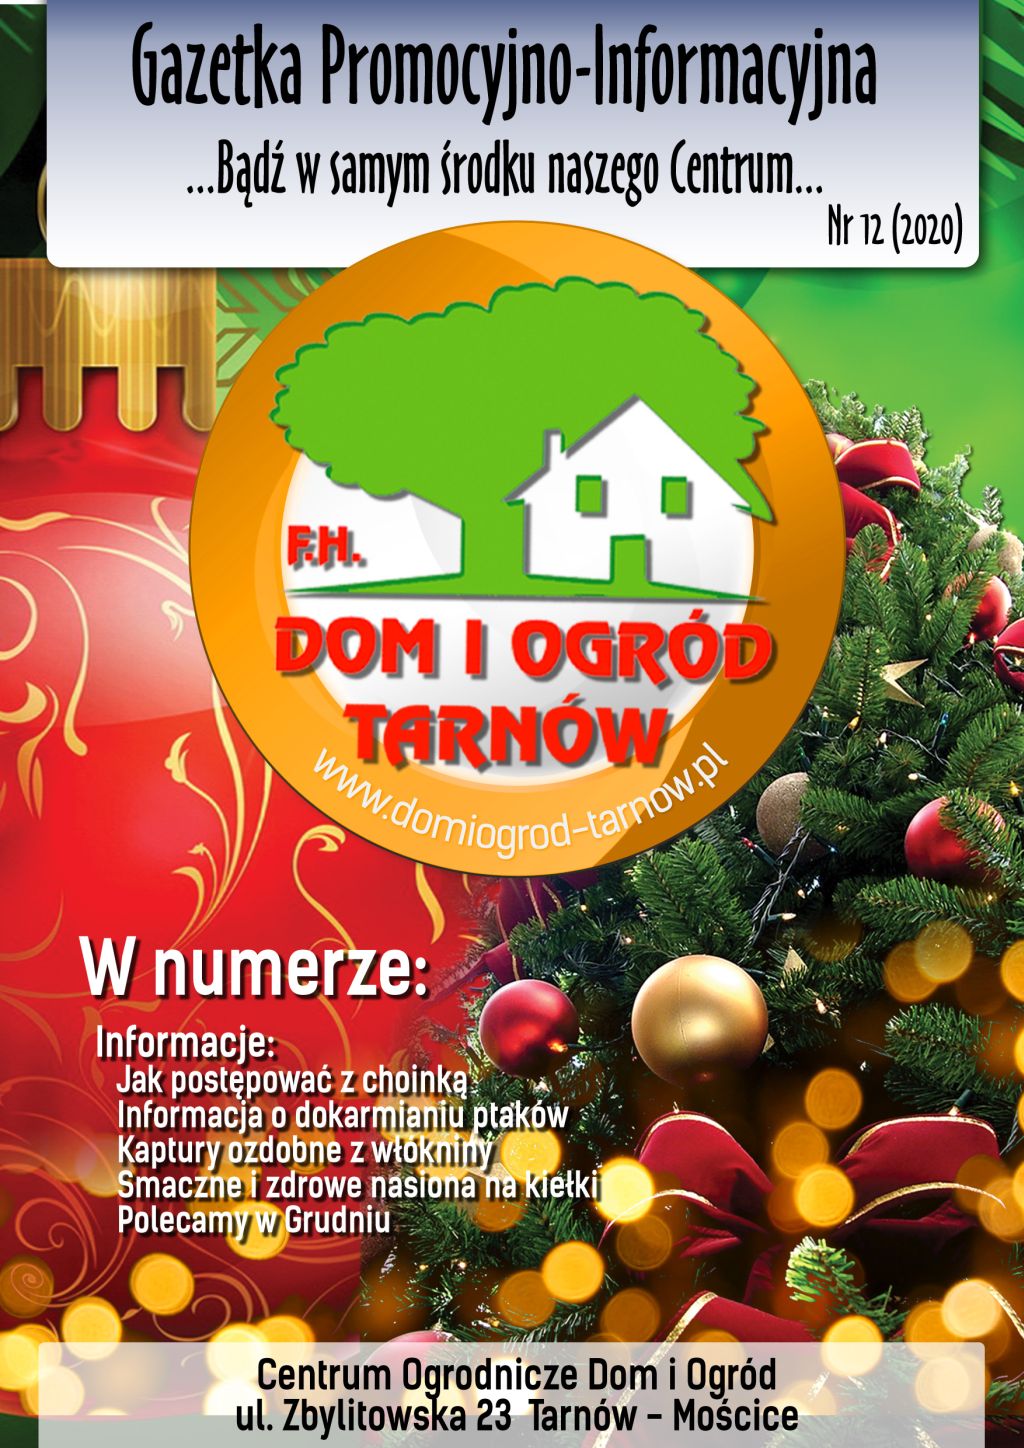 Gazetka Promocyjno-Informacyjna - 12/2020